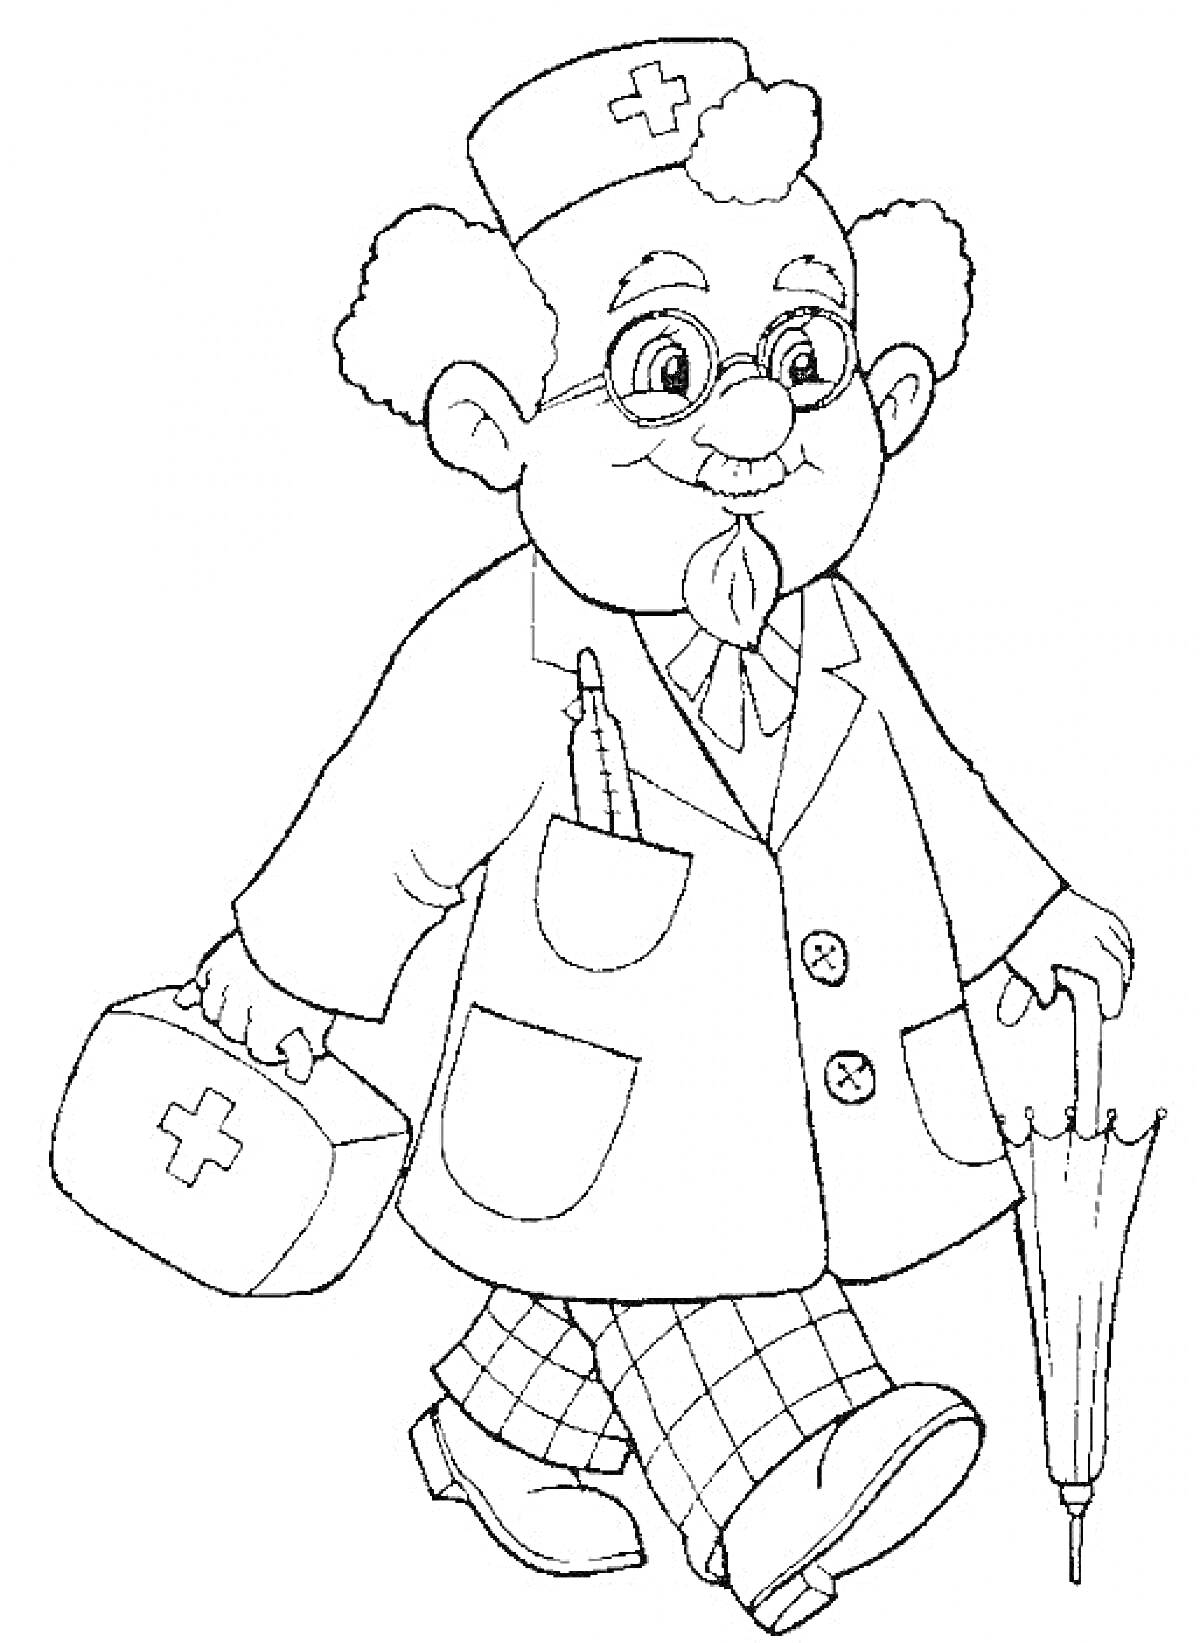 Доктор с очками, держит зонт, медицинский чемоданчик, карандаш в переднем кармане, в халате